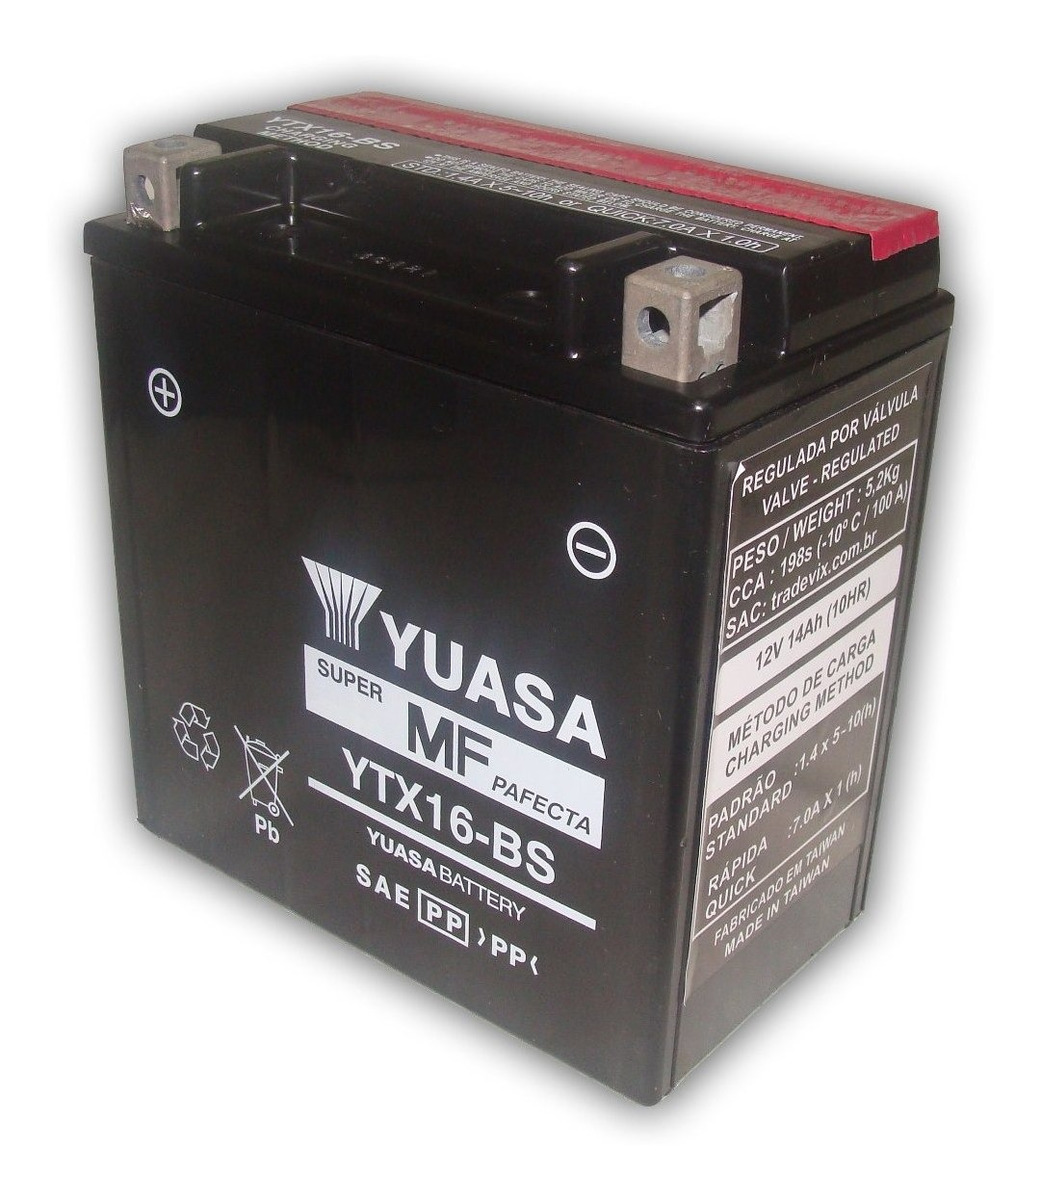 YUASA YTX16-BS Batería